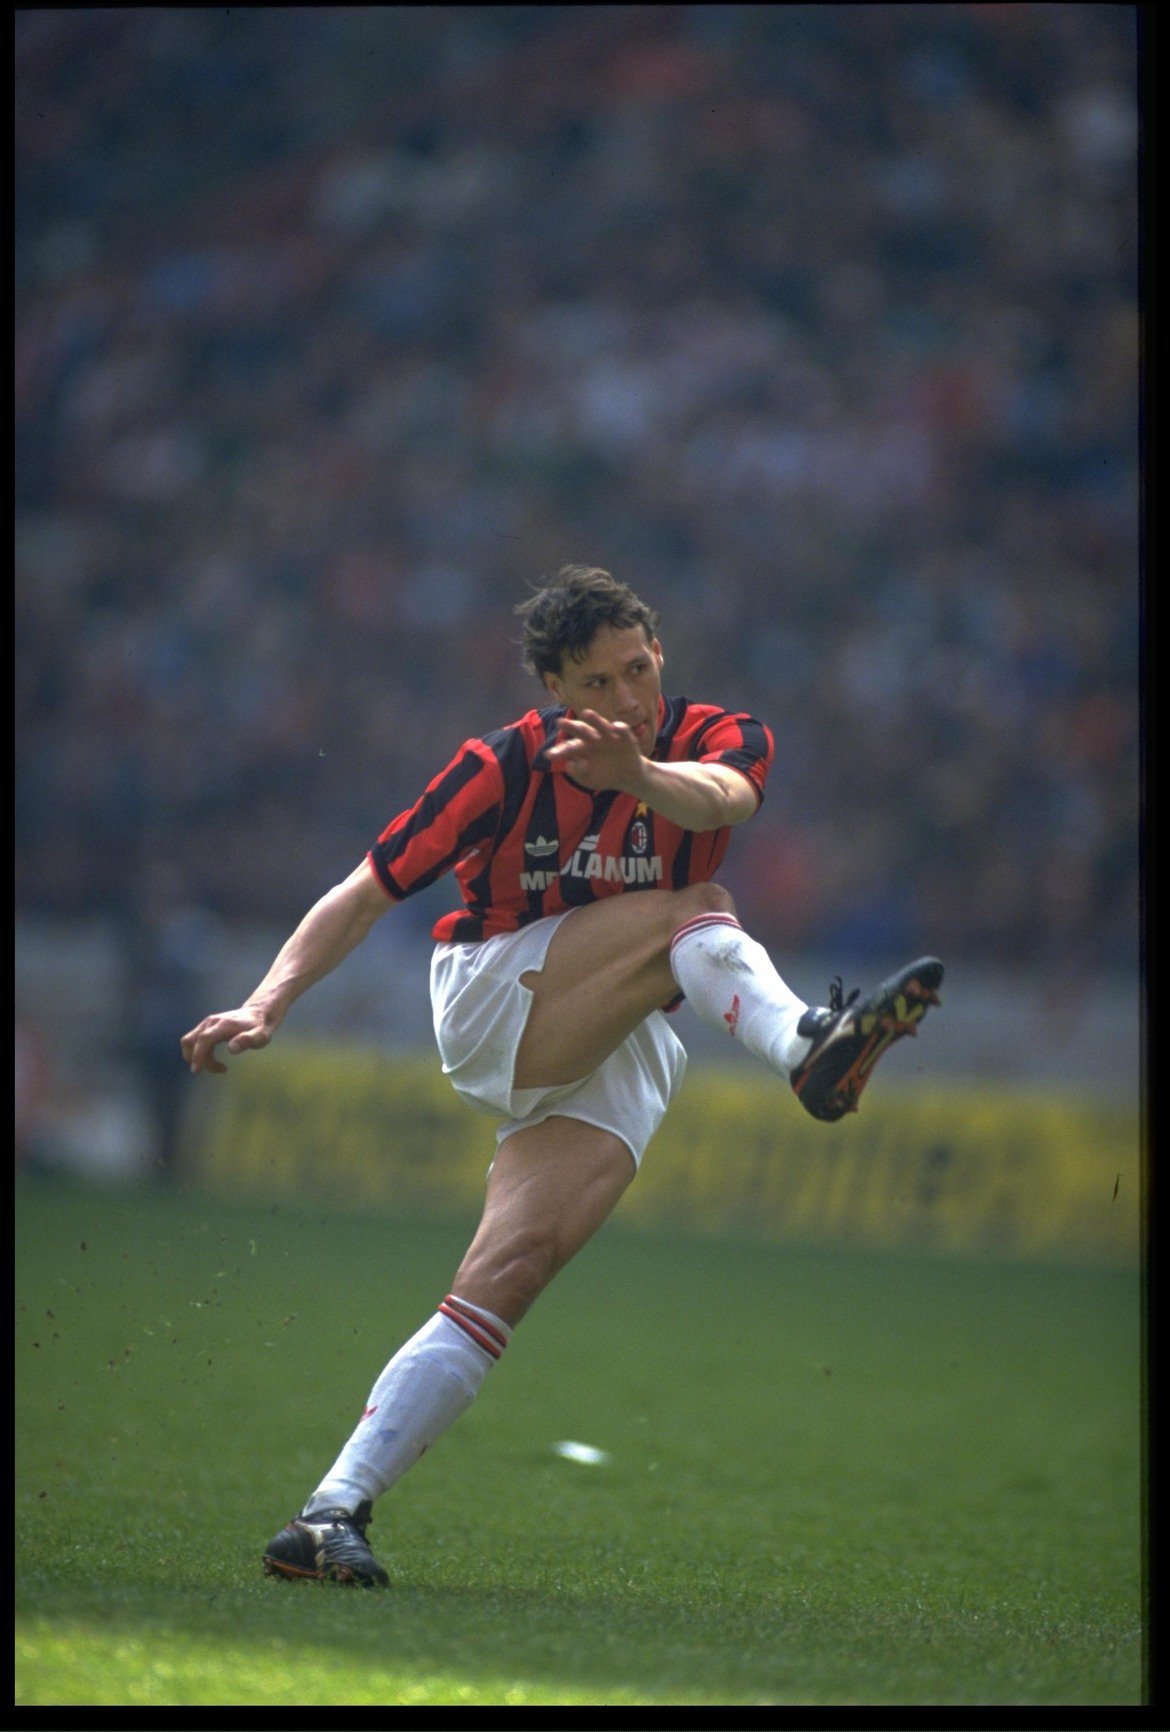 4. Марко ван Бастен (50 гола в 83 мача)

Изненадващо, на нидерландеца му отне цели три сезона да достигне до 50 гола за Милан, но после стана суперзвезда и един от най-великите в историята на "росонерите". Взе "Златната топка" за 1988/89, през следващите две години беше и голмайстор на Серия А.